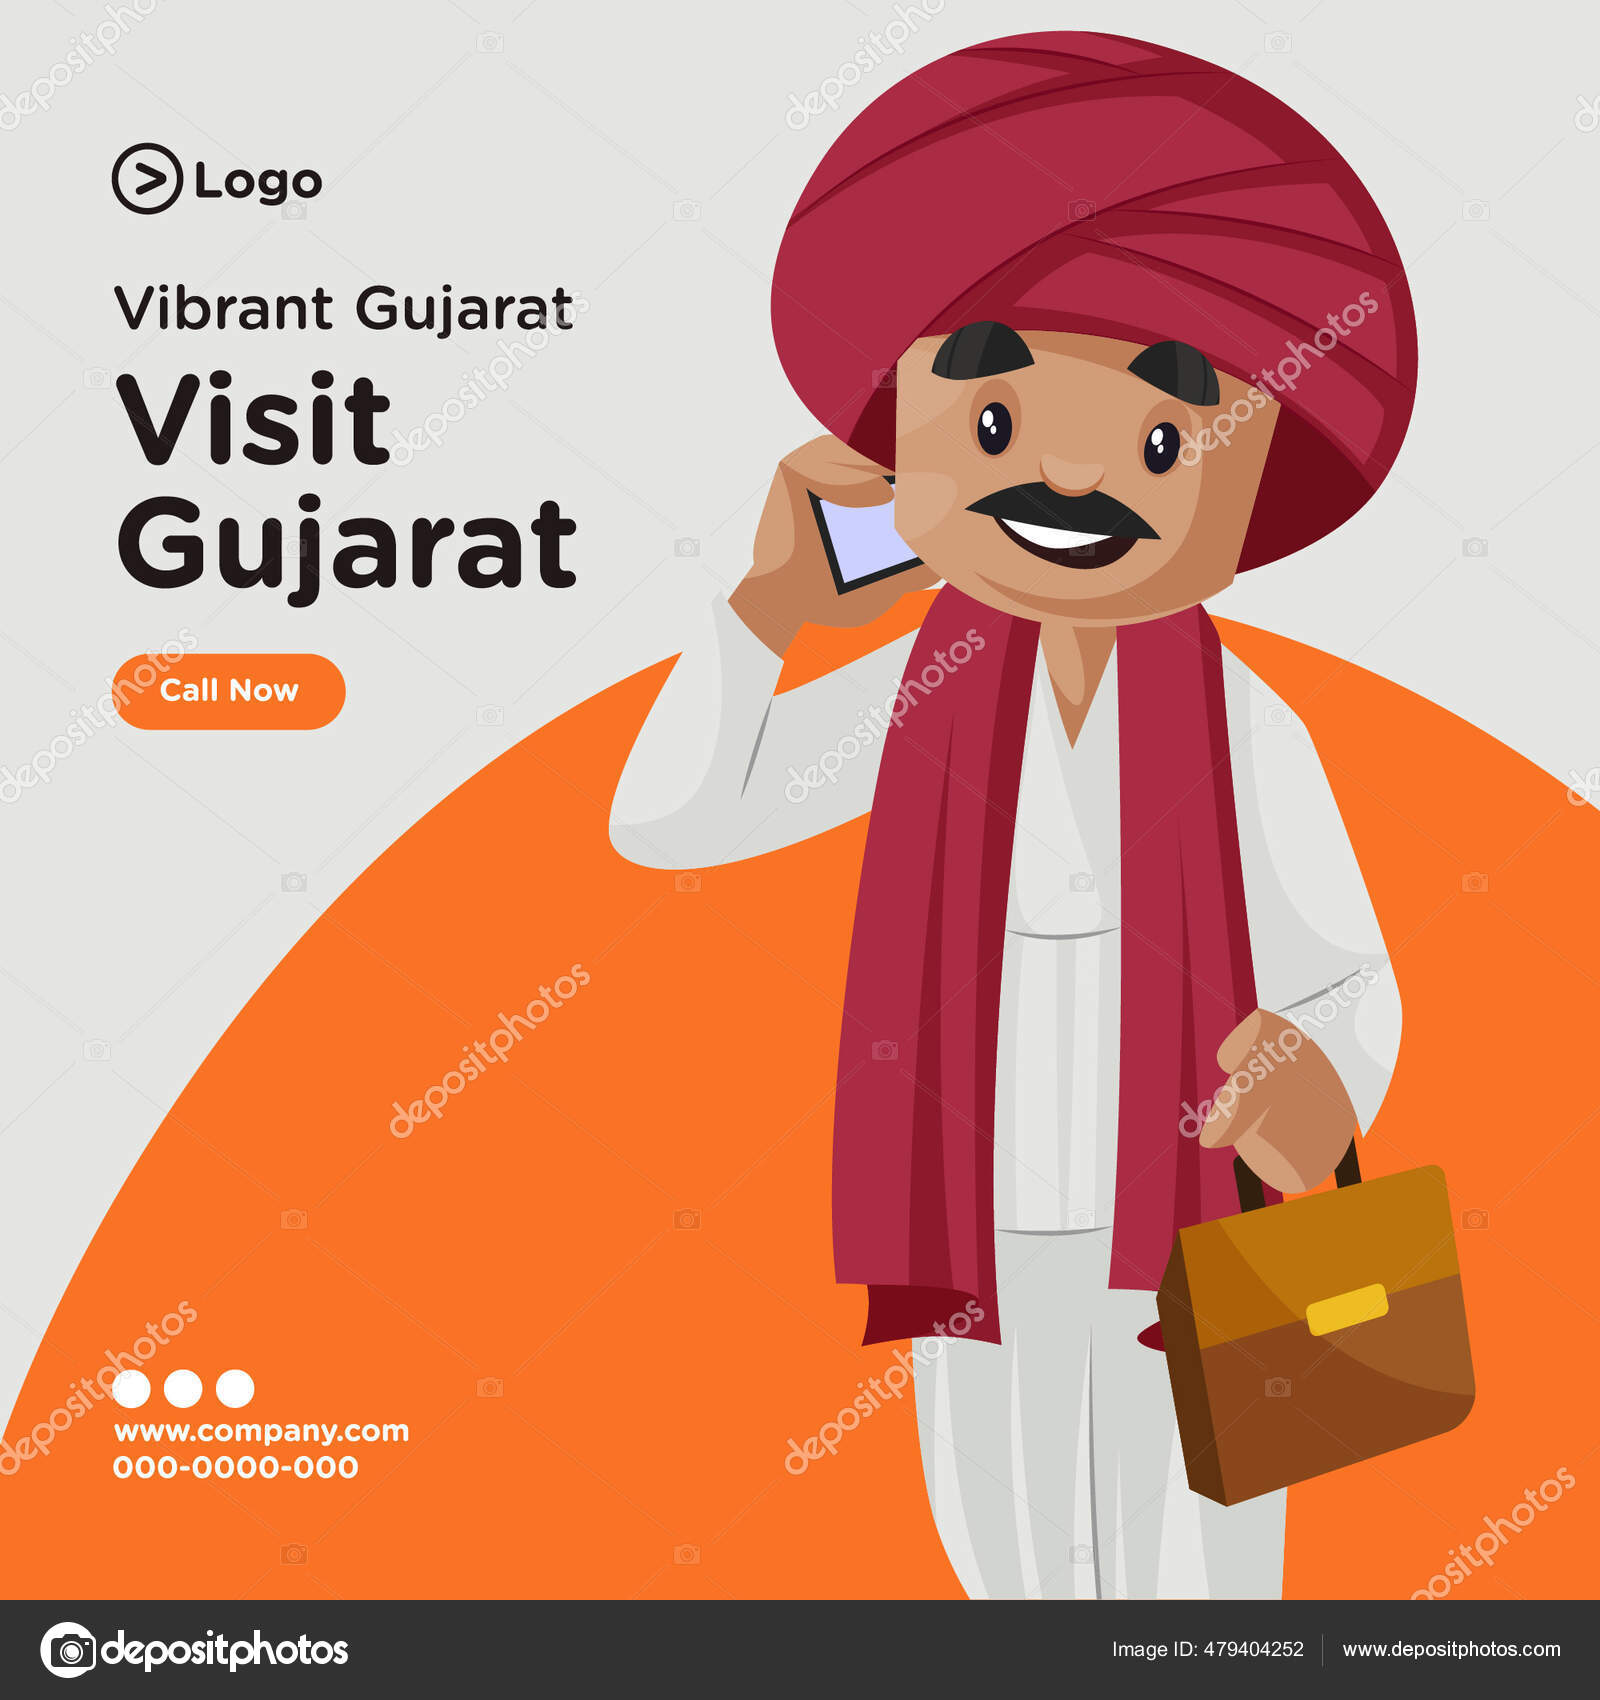 Gujarati Vector Art Stock Images | Depositphotos